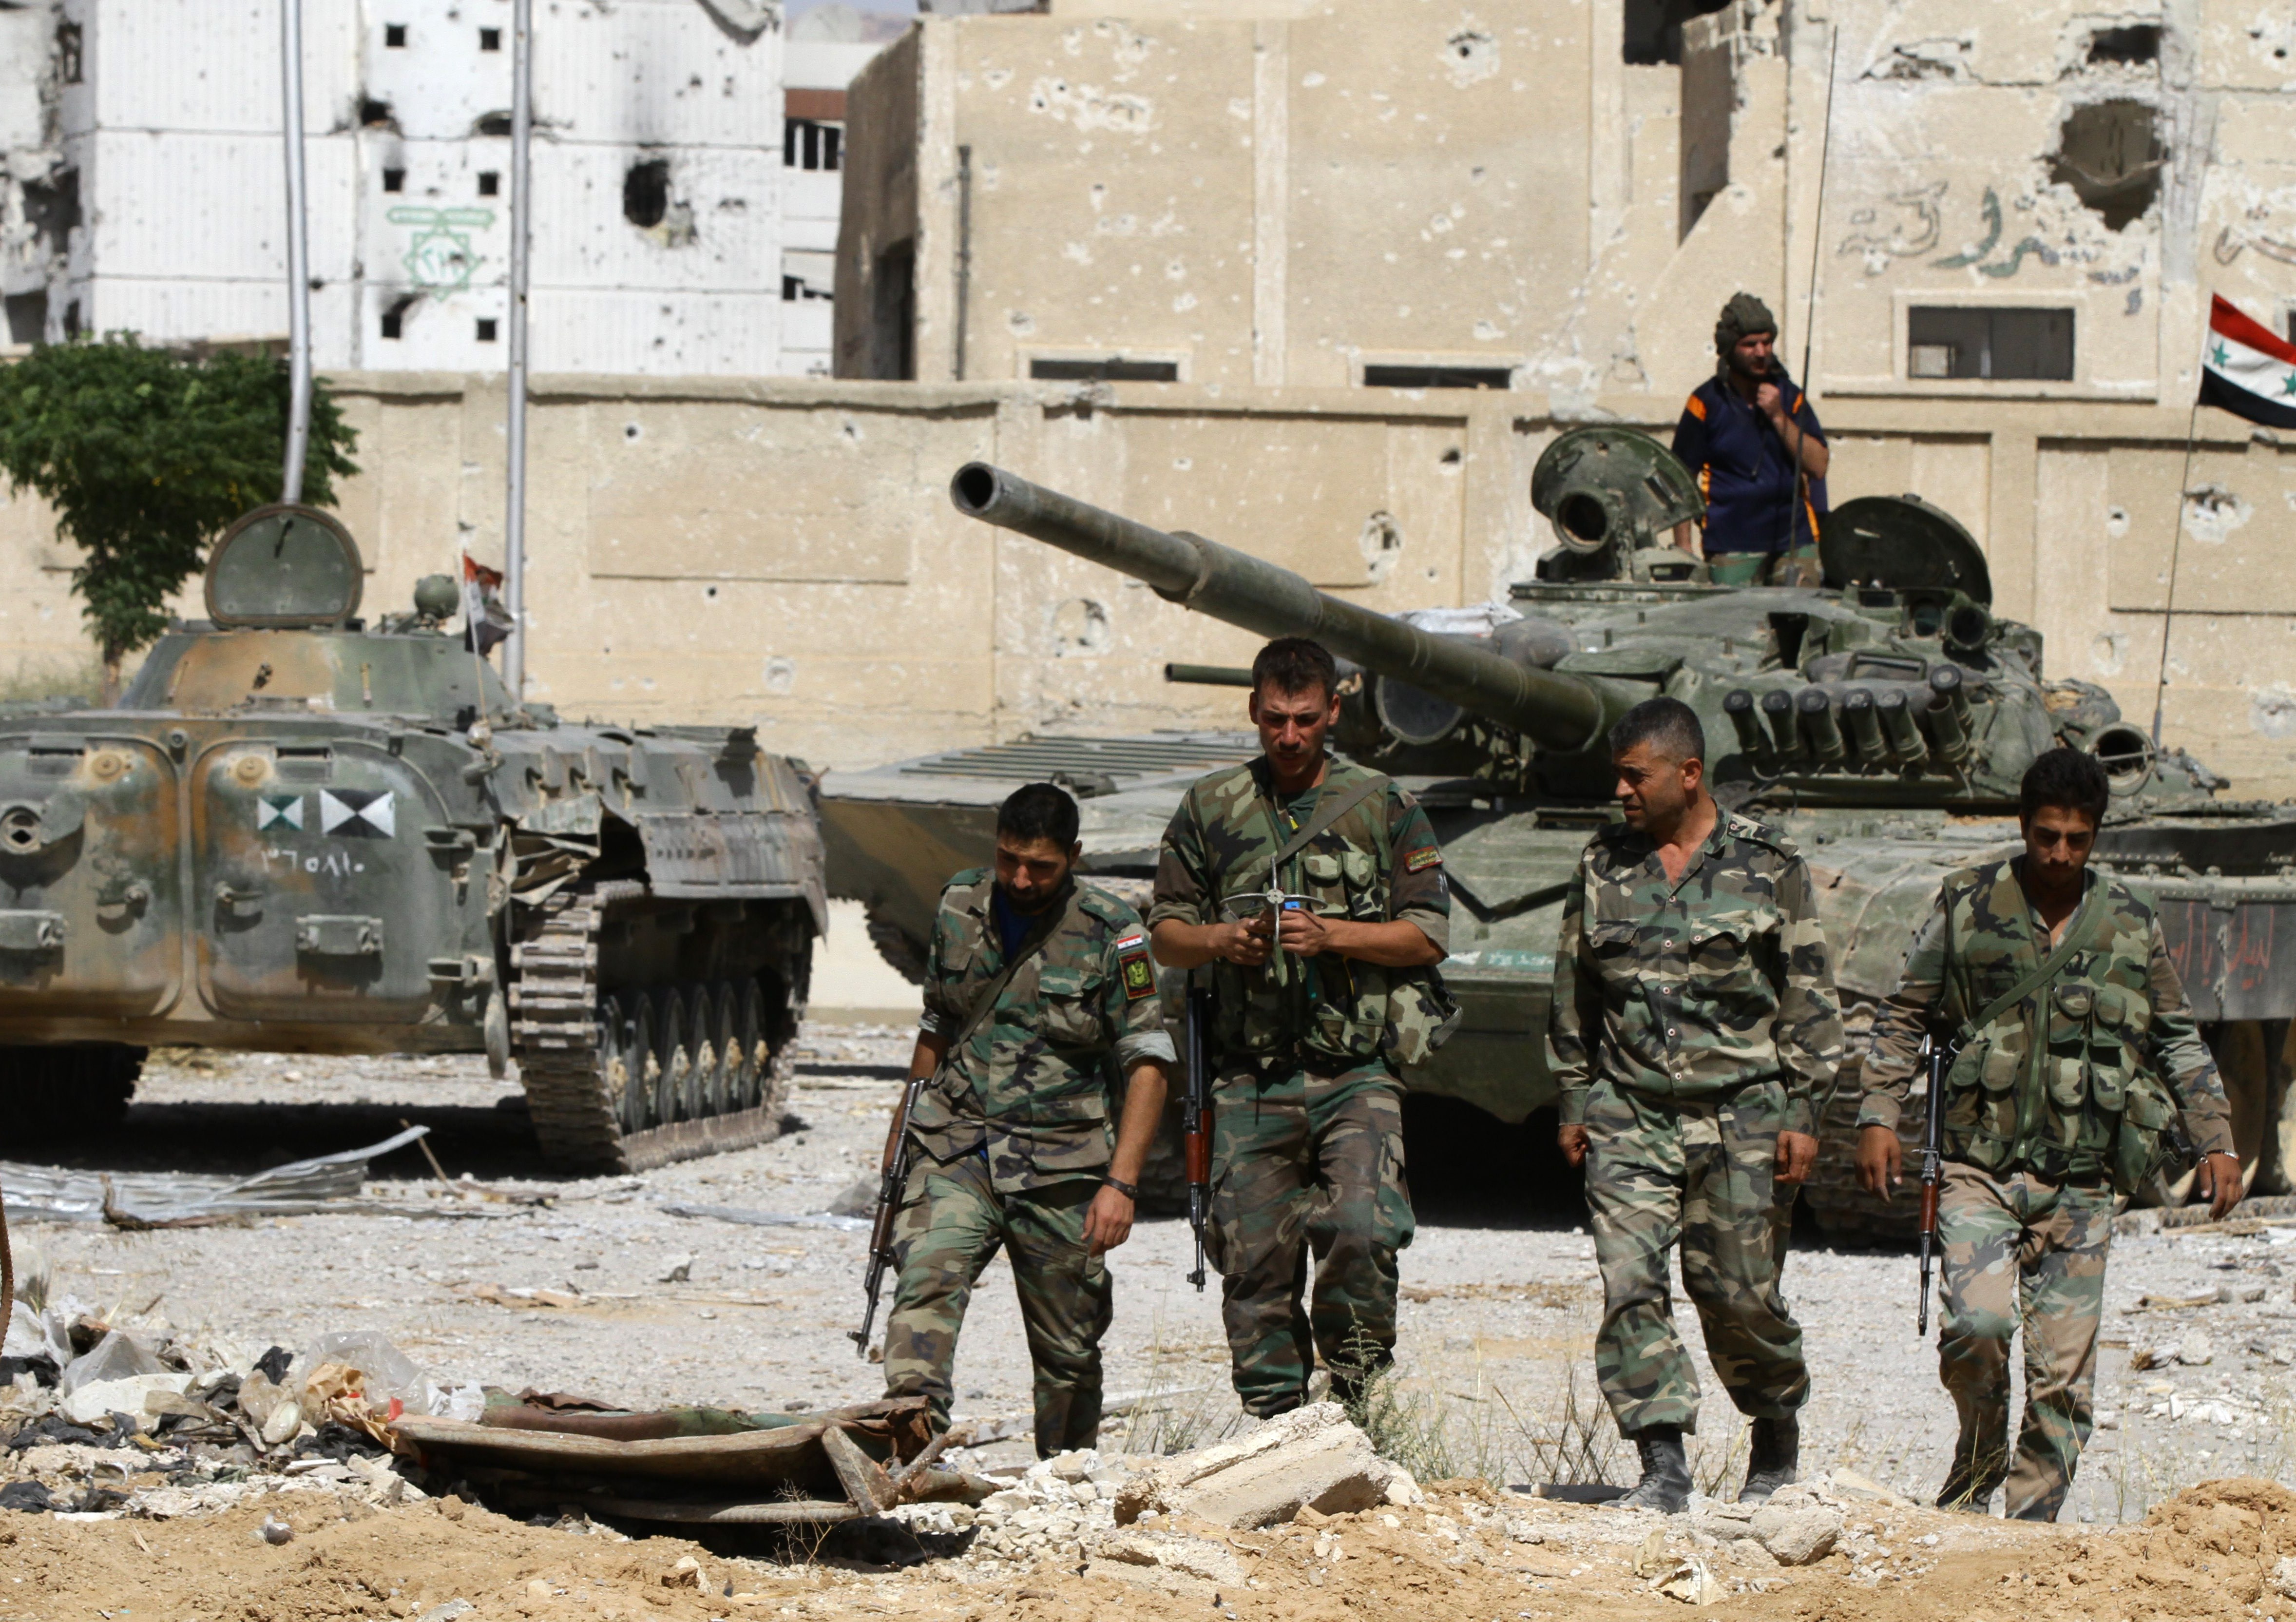 Vier Soldaten tot: US-Koalition greift syrischen Stützpunkt an